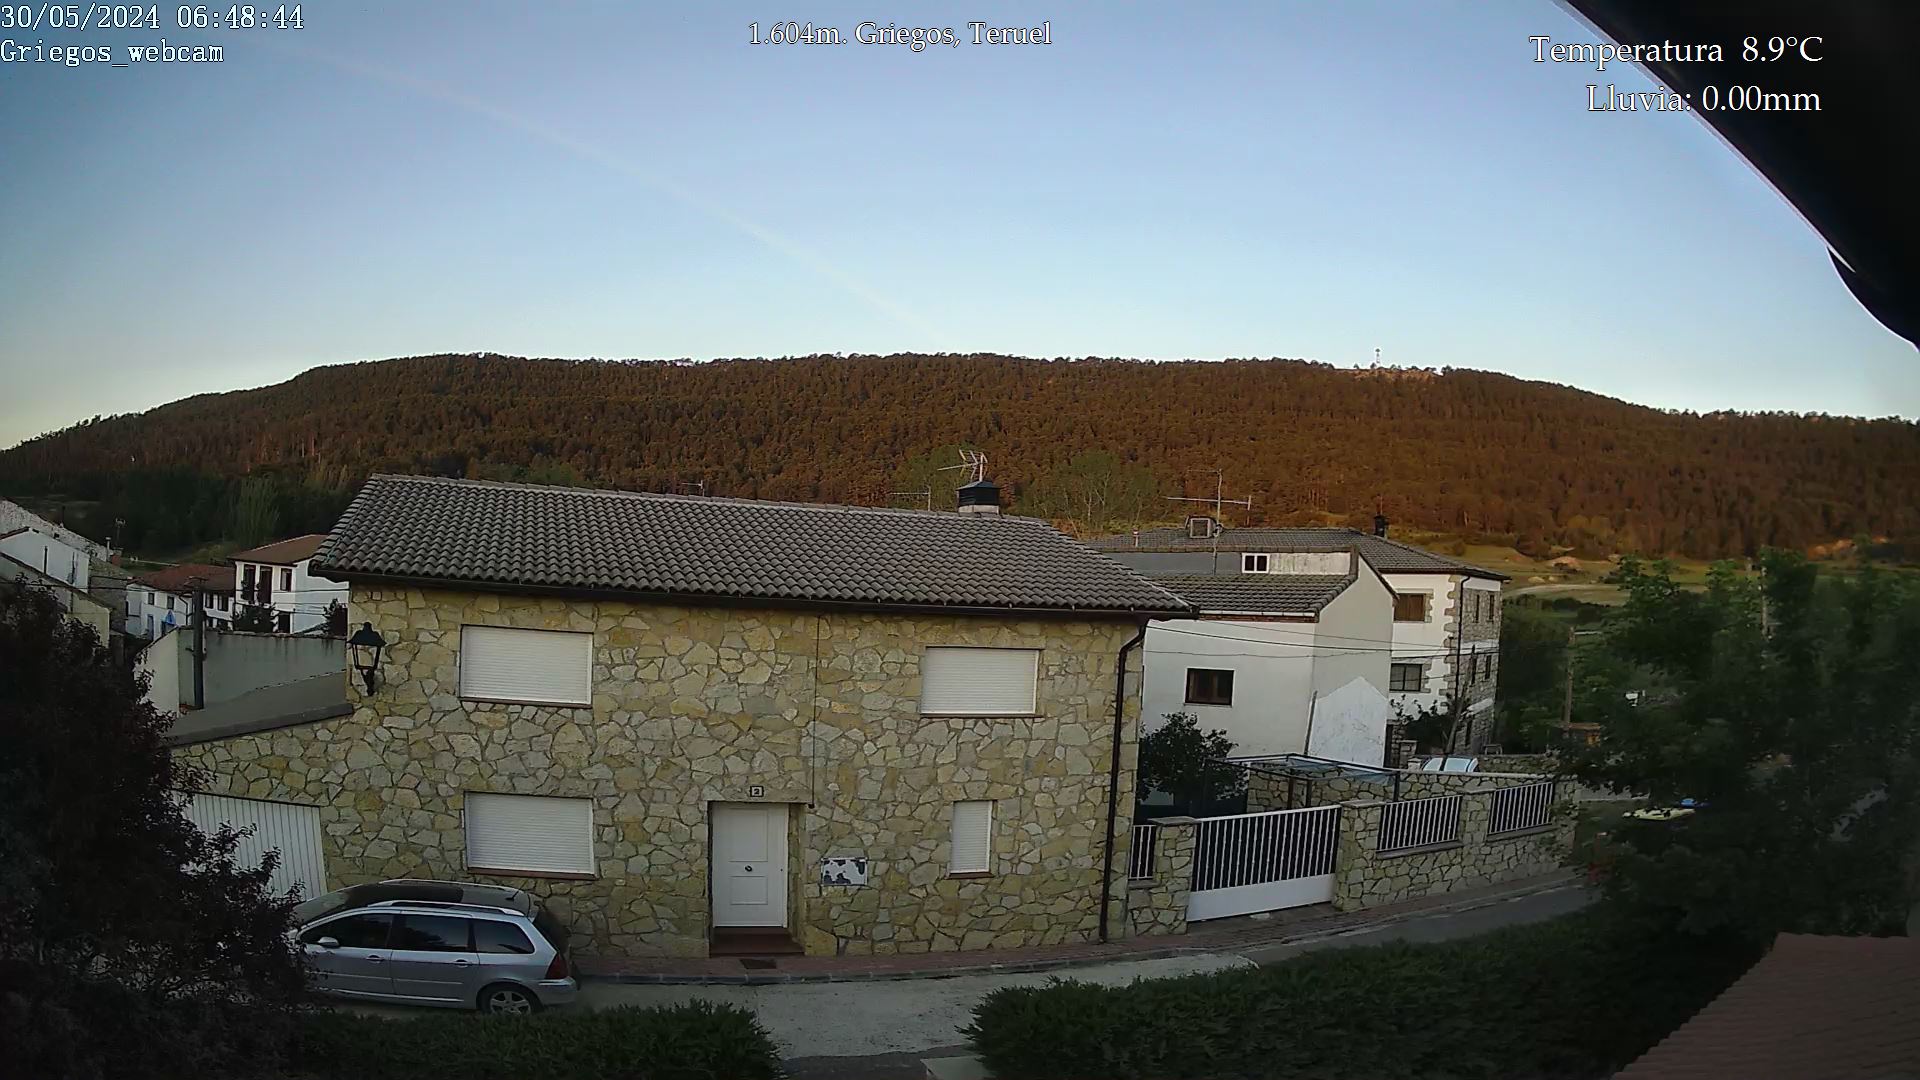 Webcam en Griegos - La Muela